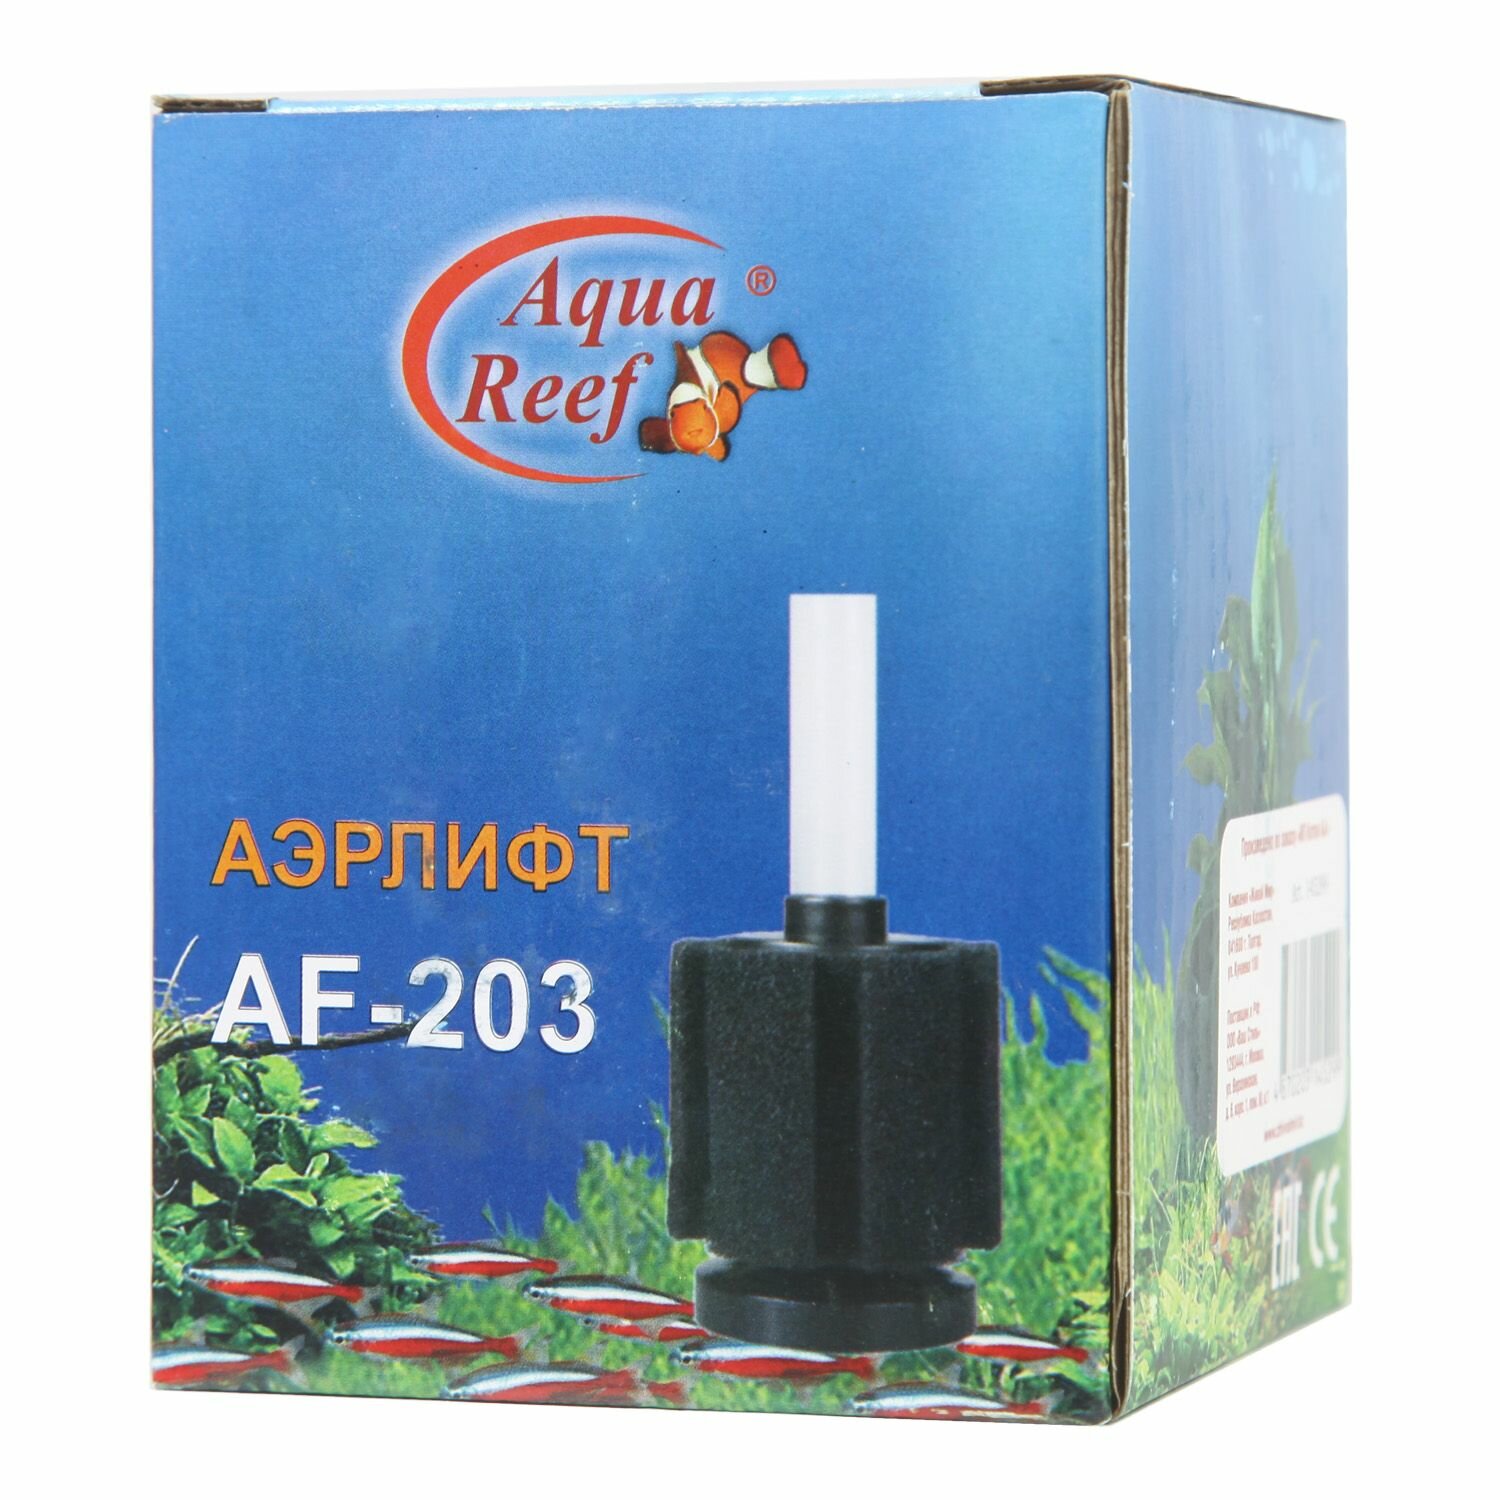 Аэрлифт AquaReef AF-203 8*8*10,5см Aqua Reef, 145299 (1 шт)